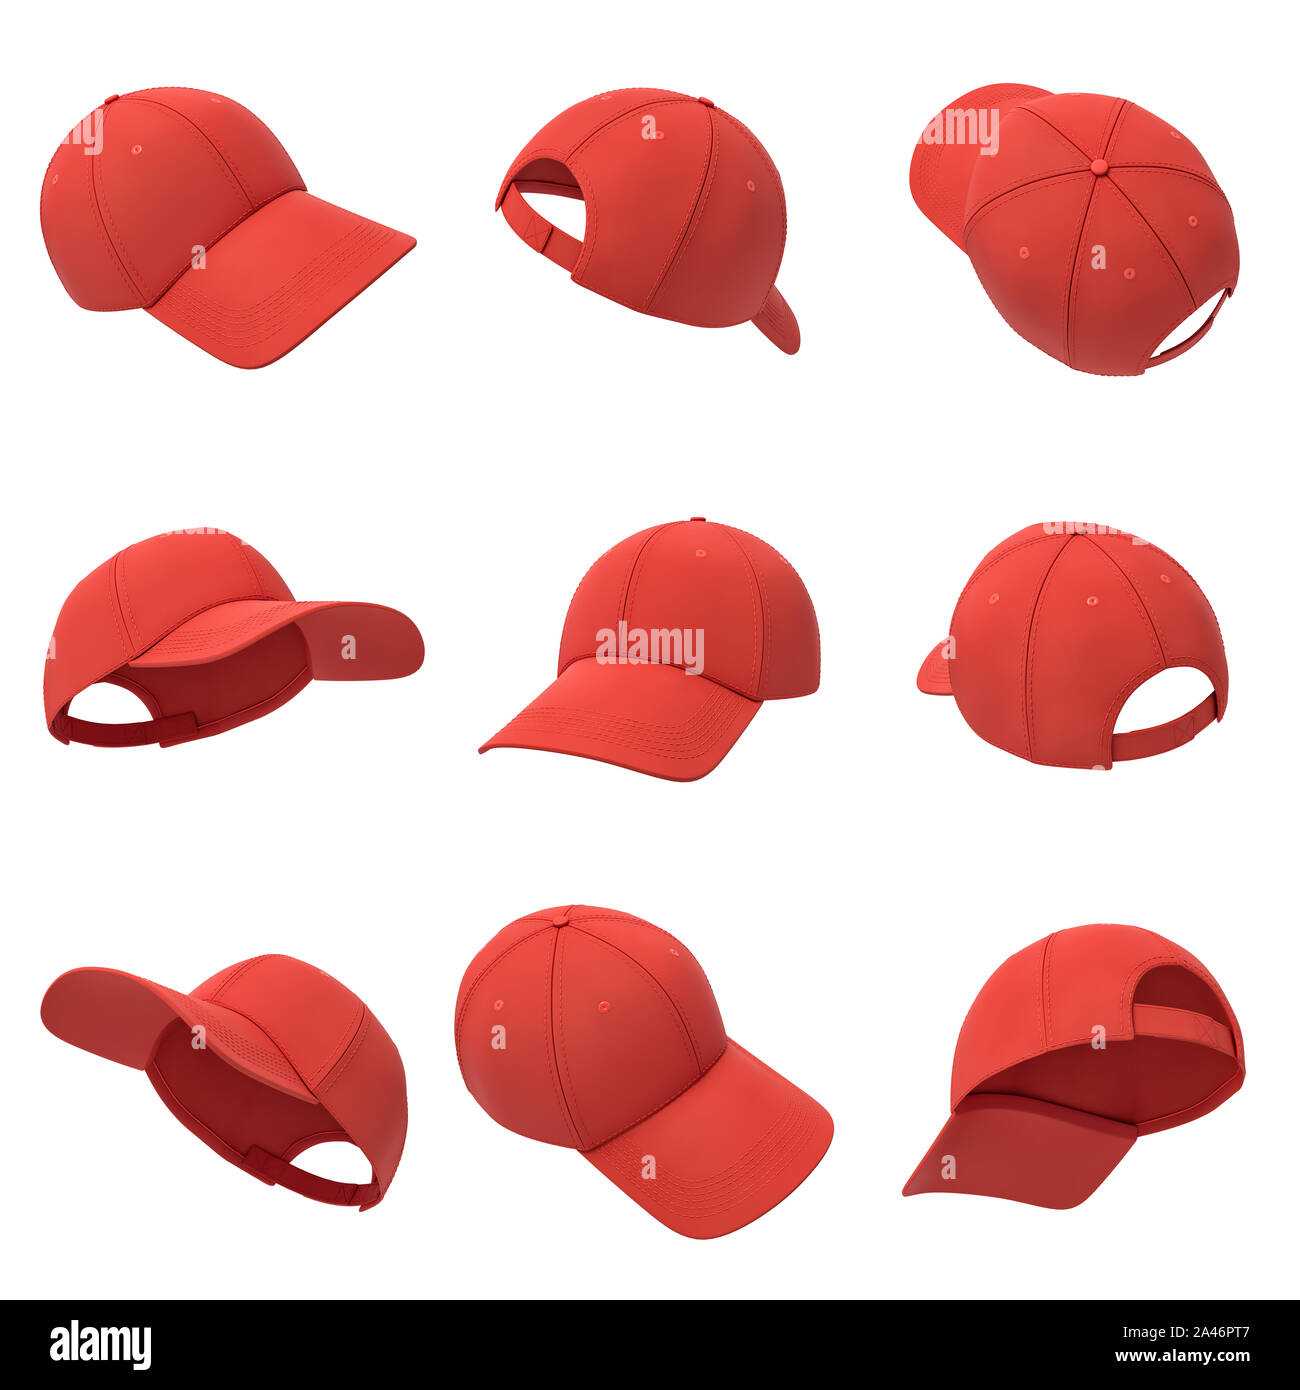 Le rendu 3D d'un grand nombre de casquettes de baseball rouge accroché sur  un fond blanc dans des angles différents. Casquette de baseball. Coiffures  occasionnelles. Sport style Photo Stock - Alamy